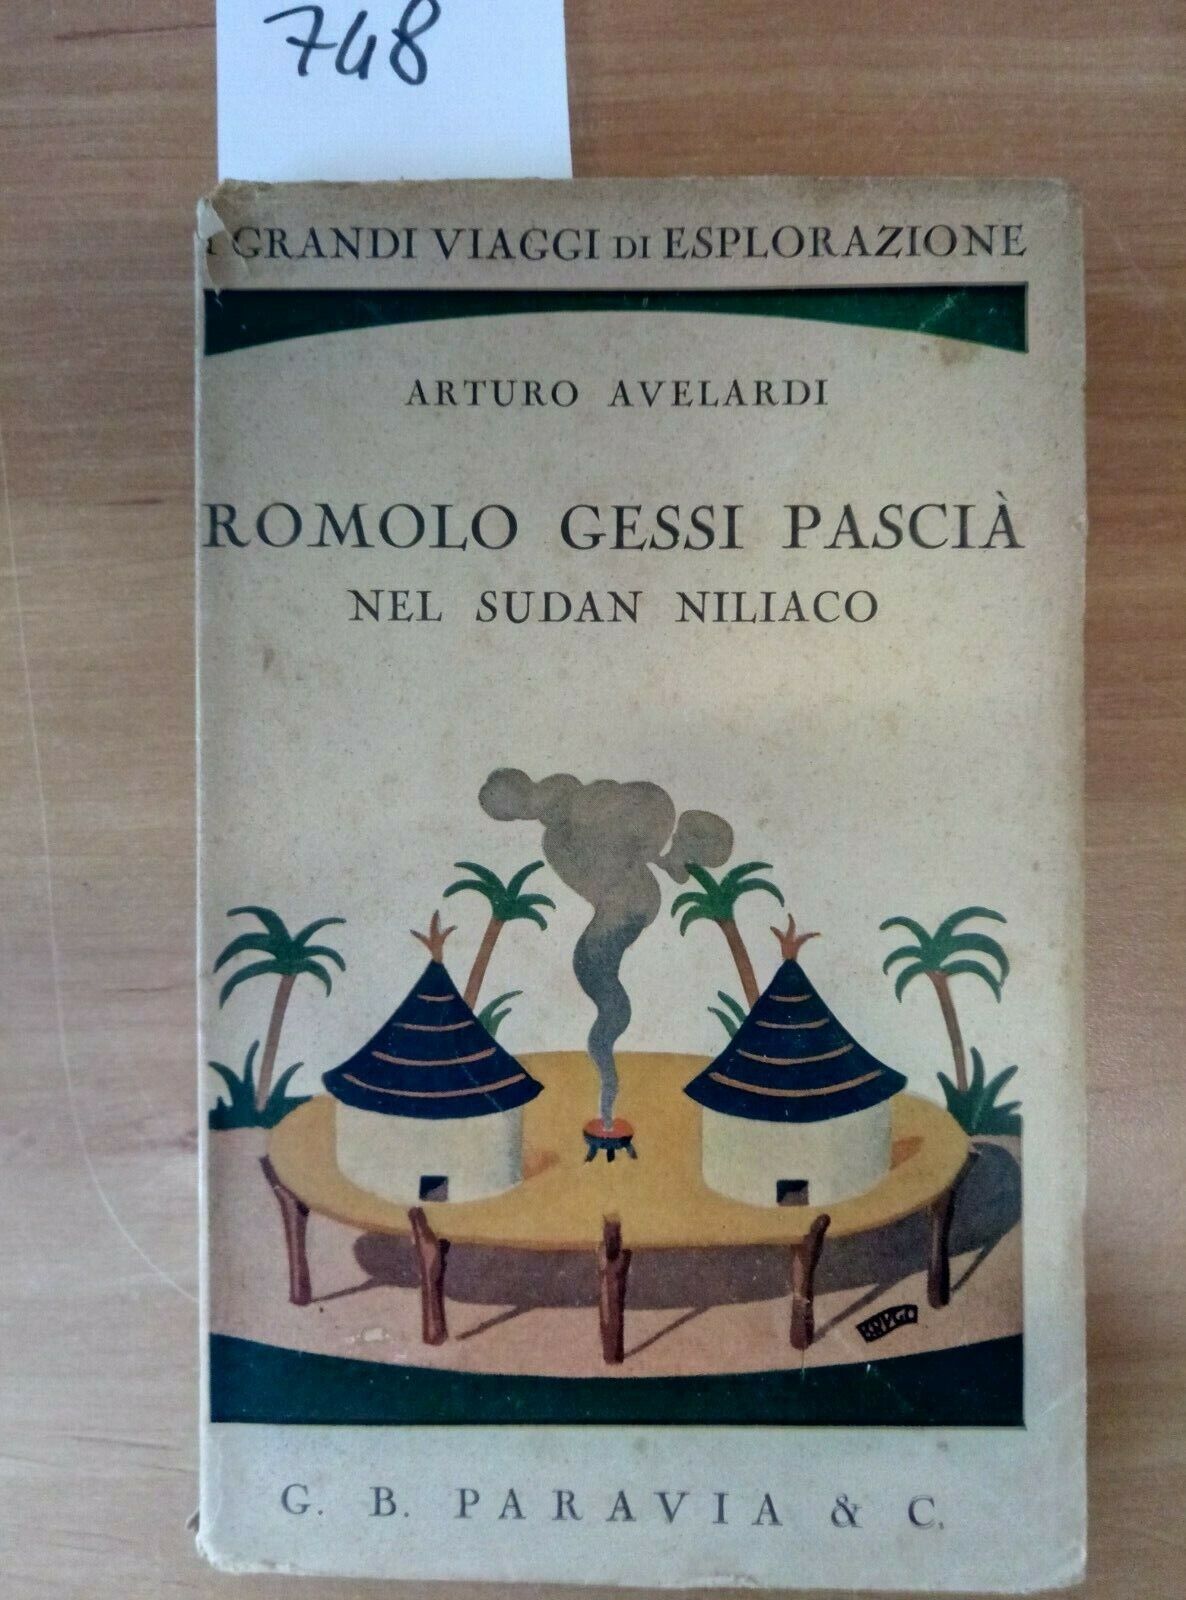 ROMOLO GESSI PASCIA\' NEL SUDAN NILIACO 1932 PARAVIA - I GRANDI VIAGGI - 748